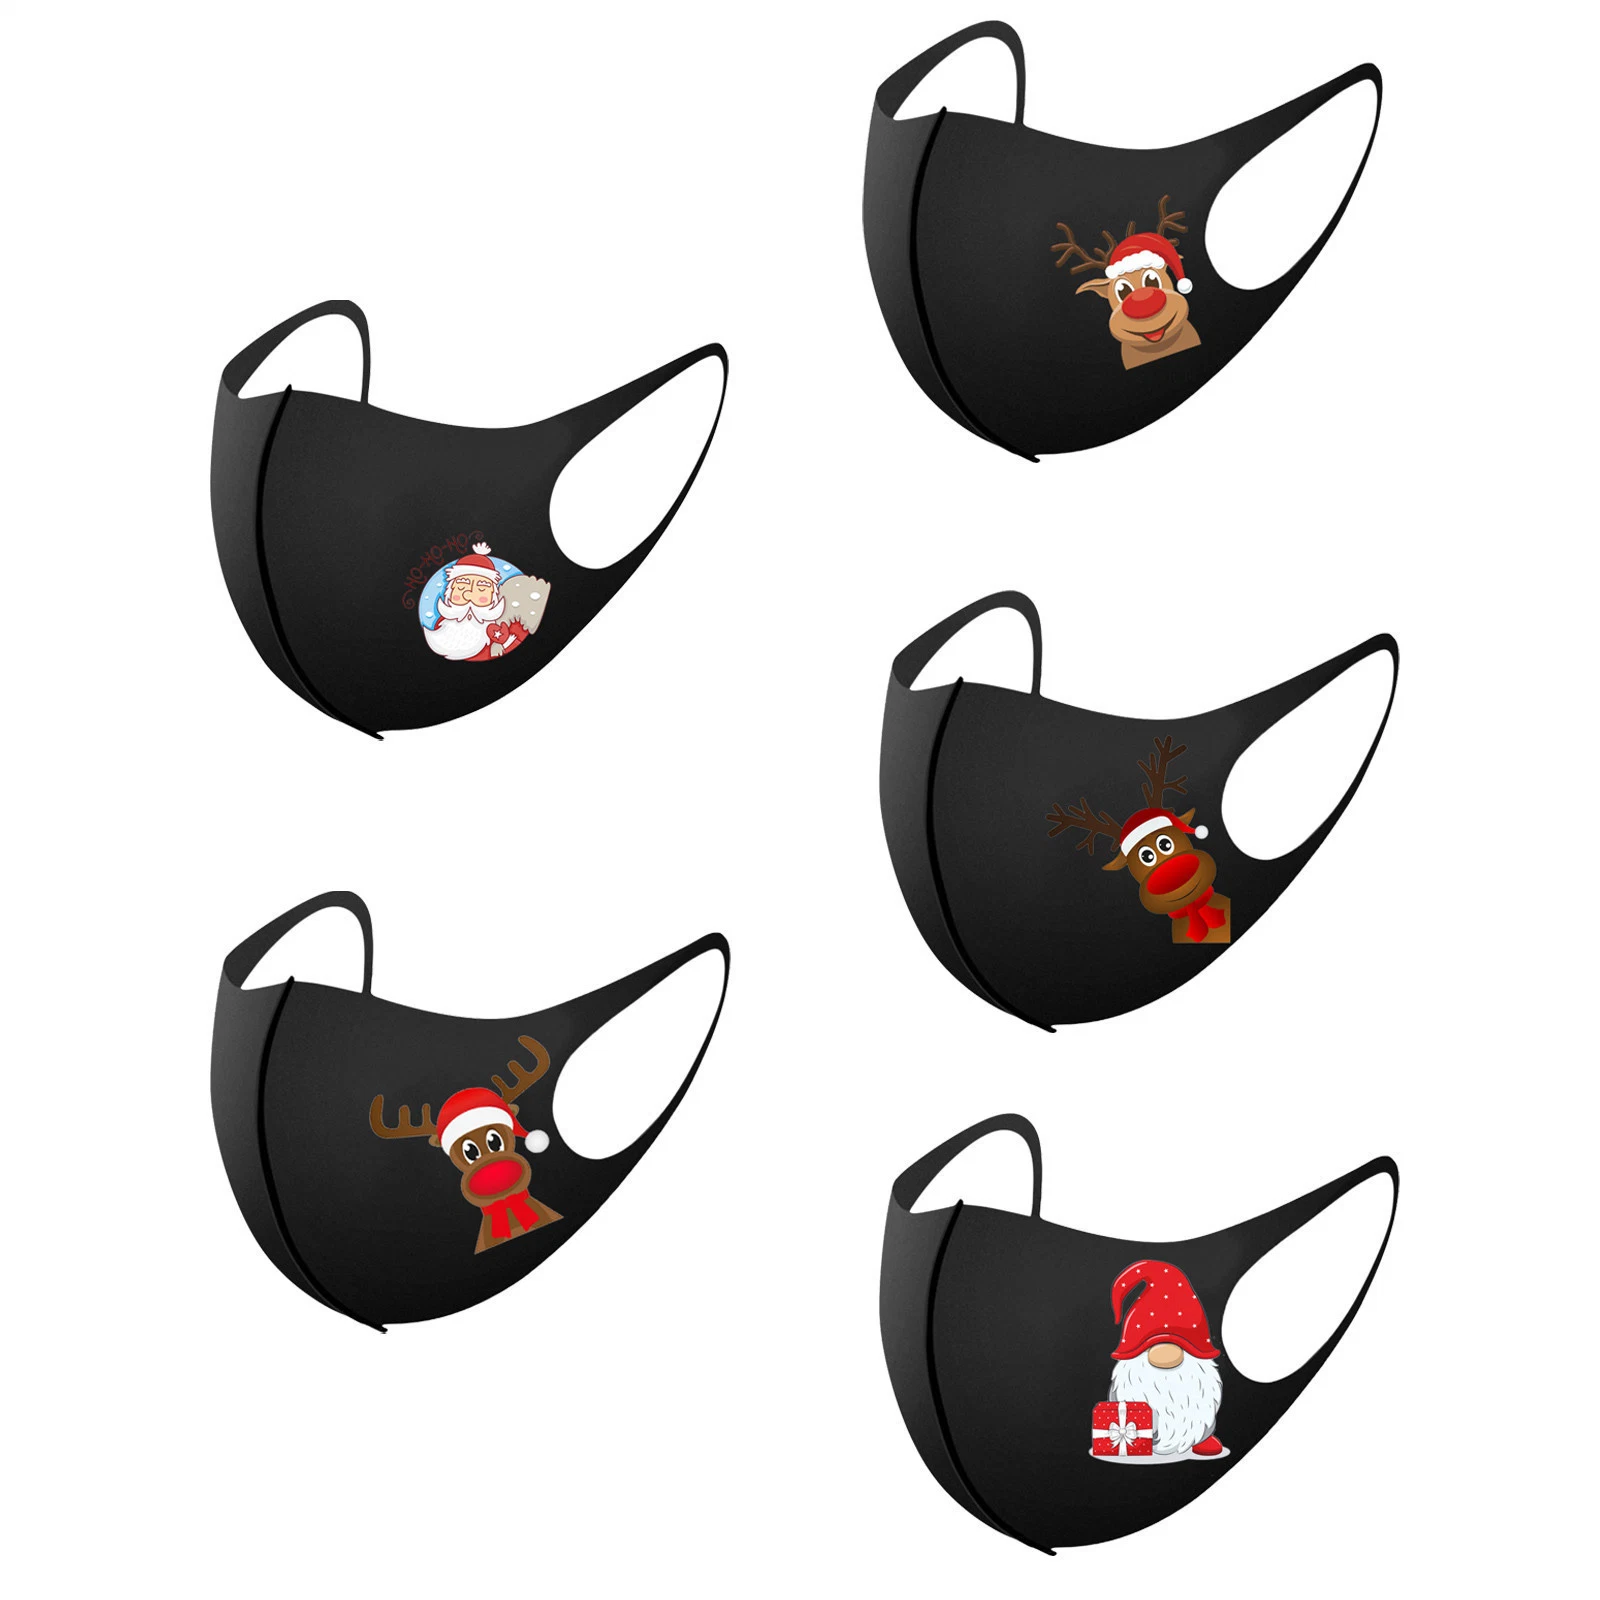 OEM decorativos logotipo personalizado para niños adultos algodón tela negra está a favor de la boca Animal creativo la máscara de fiesta de Navidad máscara reutilizables.